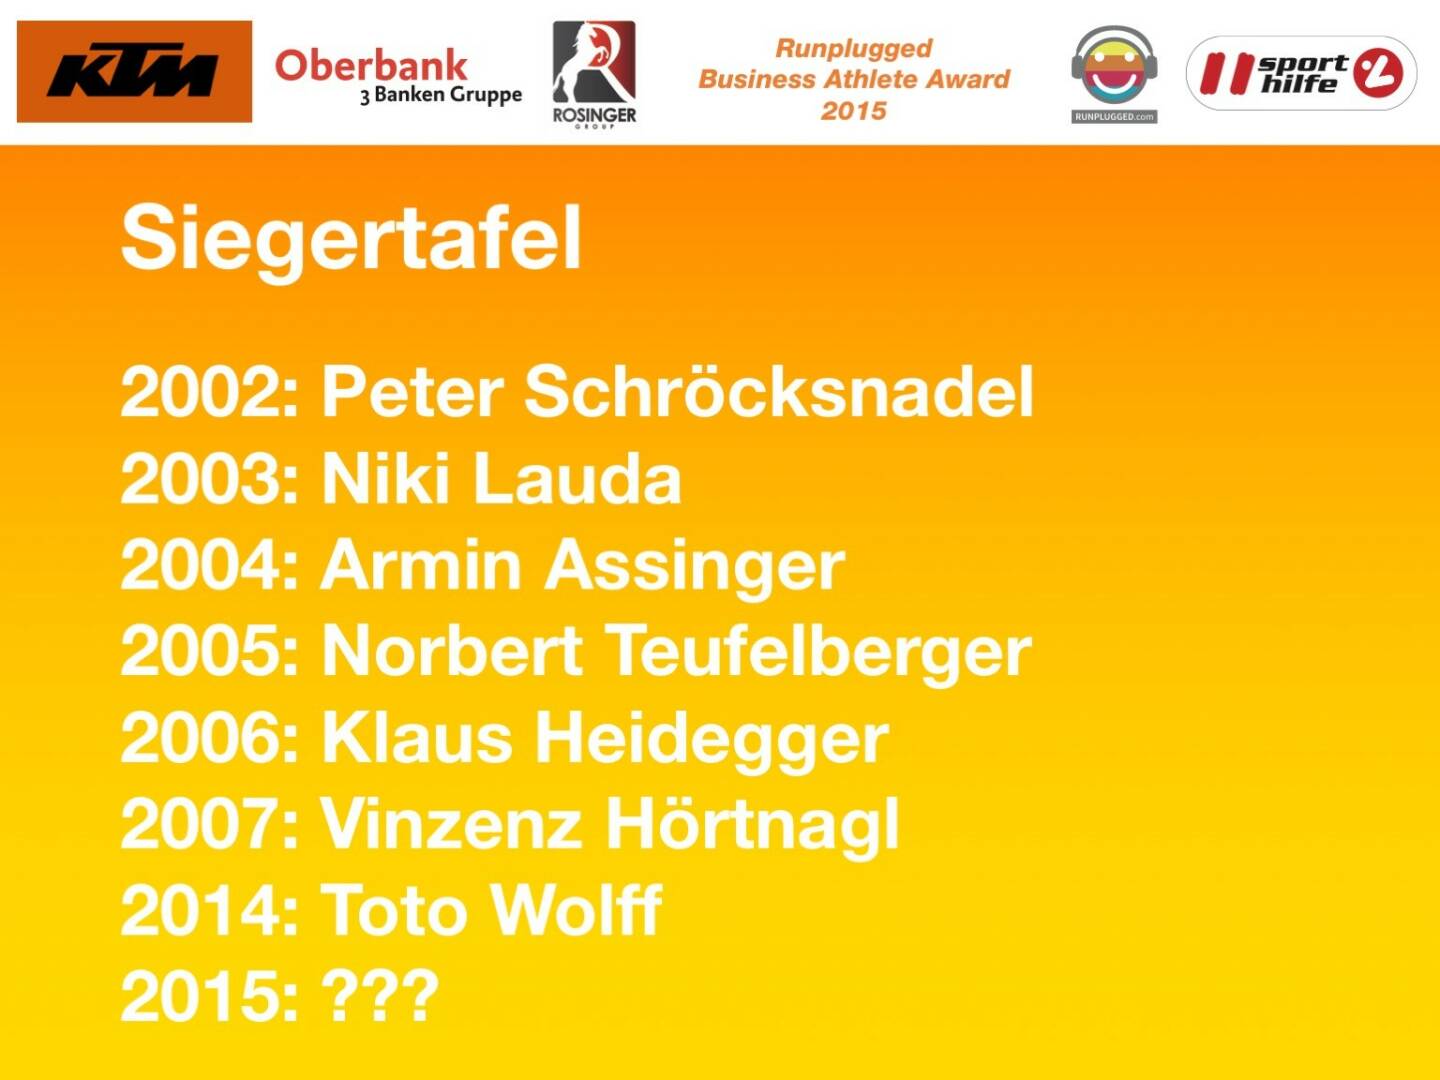 Siegertafel: 2002: Peter Schröcksnadel, 2003: Niki Lauda, 2004: Armin Assinger, 2005: Norbert Teufelberger, 2006: Klaus Heidegger, 2007: Vinzenz Hörtnagl, 2014: Toto Wolff, 2015: ???
